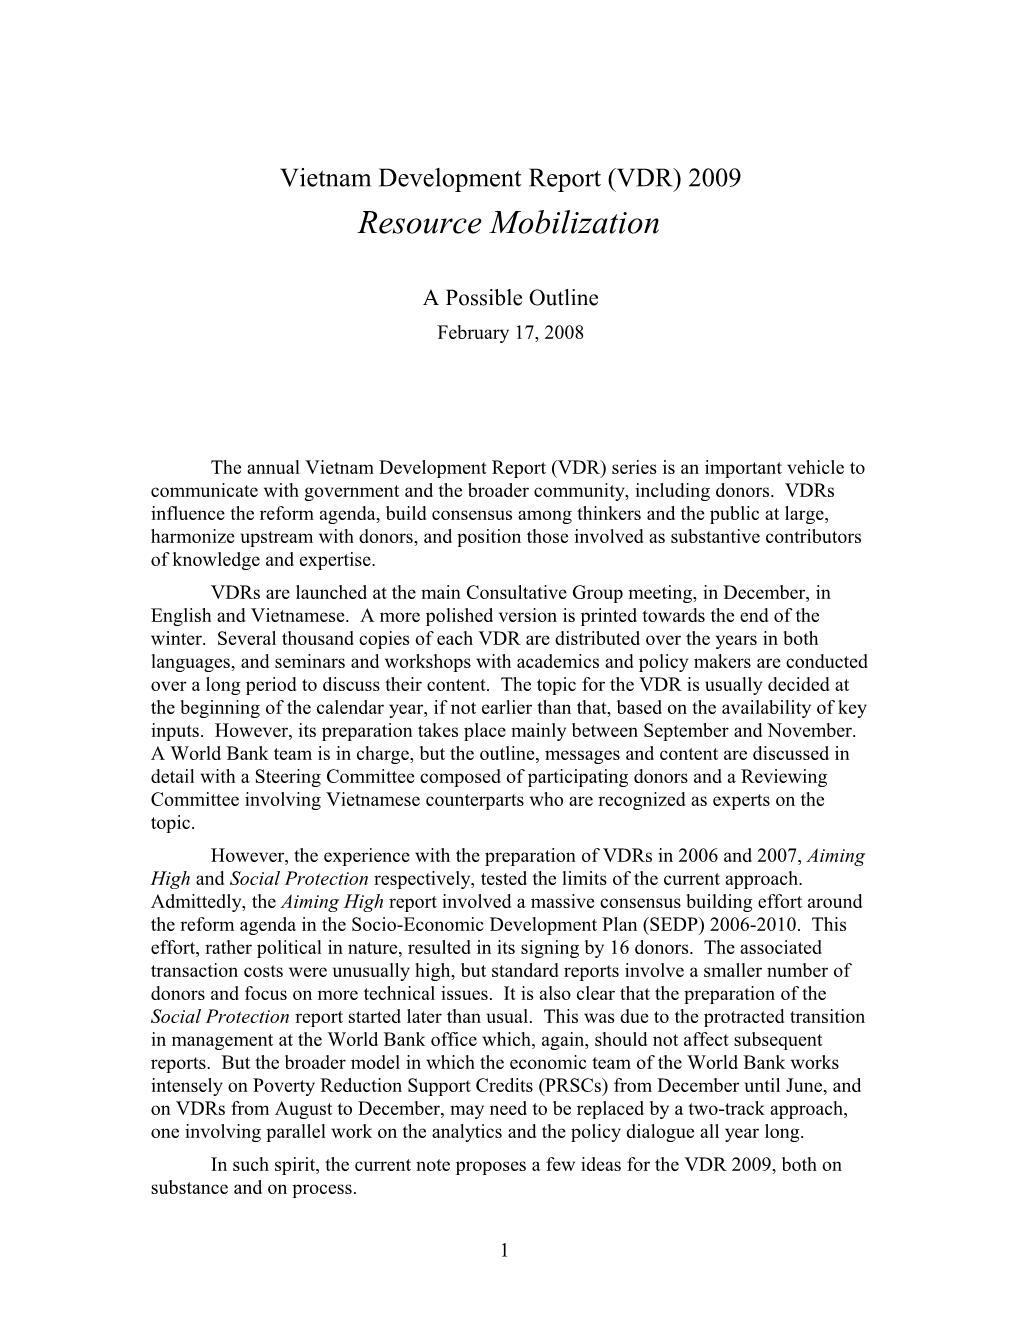 Inputs for Vietnam Development Report 2009